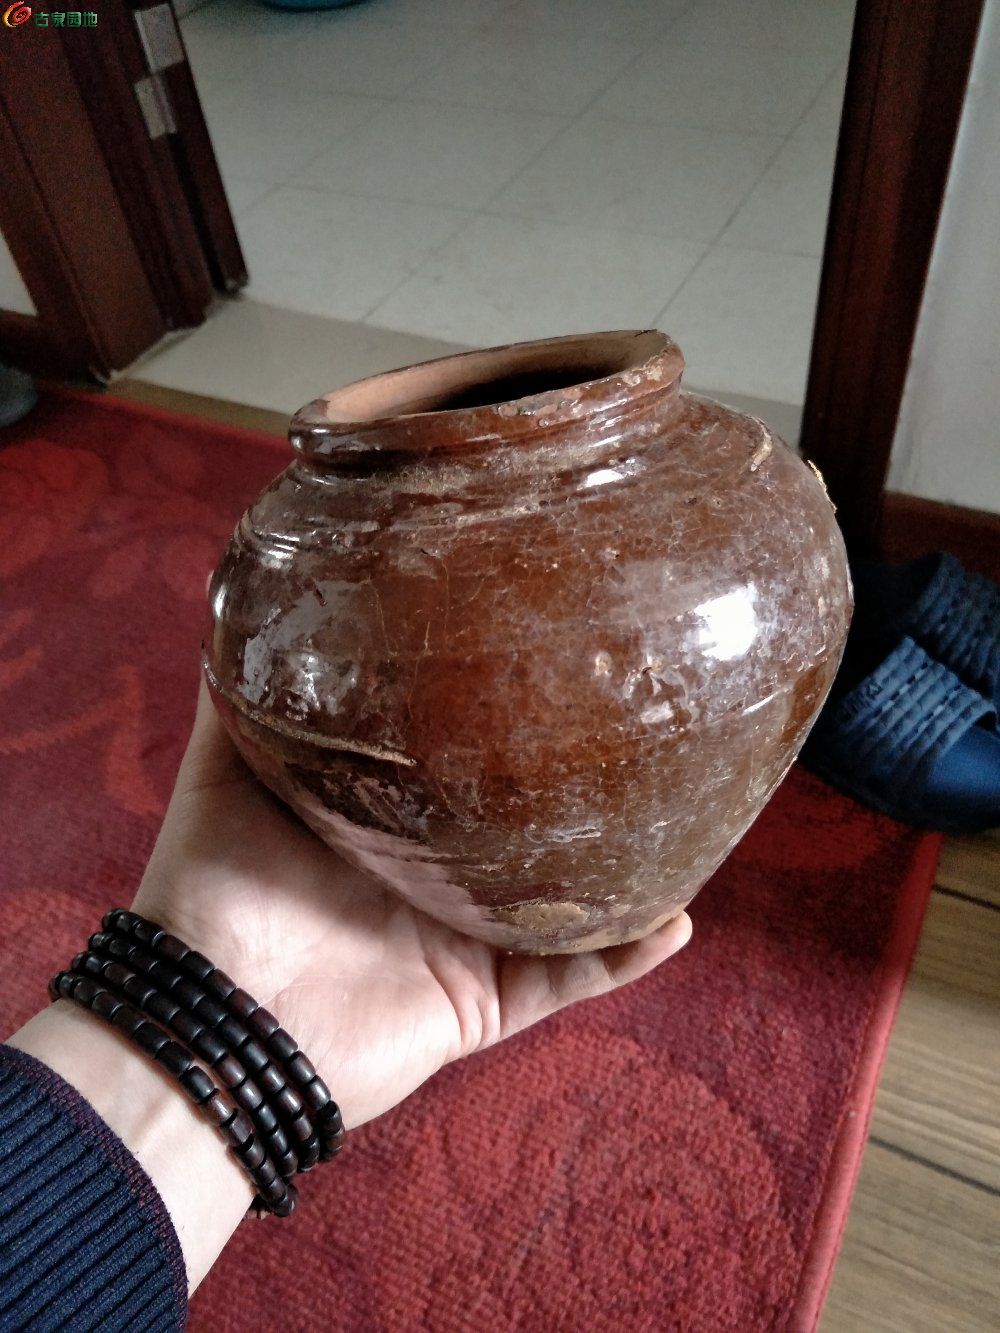 汉代红陶罐图片